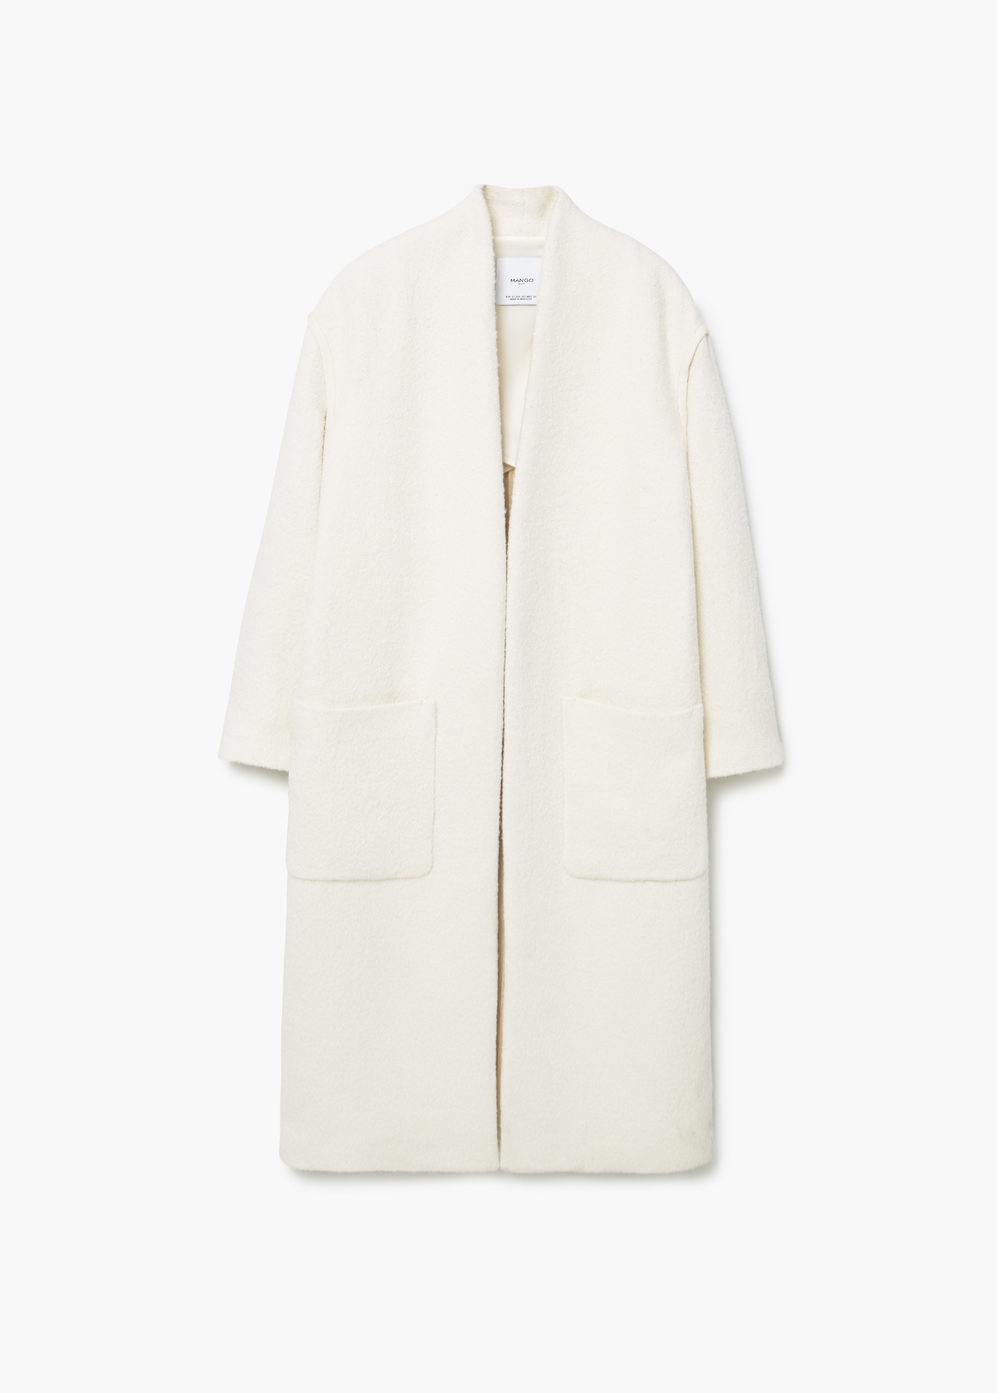 Abrigo largo blanco. De Mango, 119,99 euros.